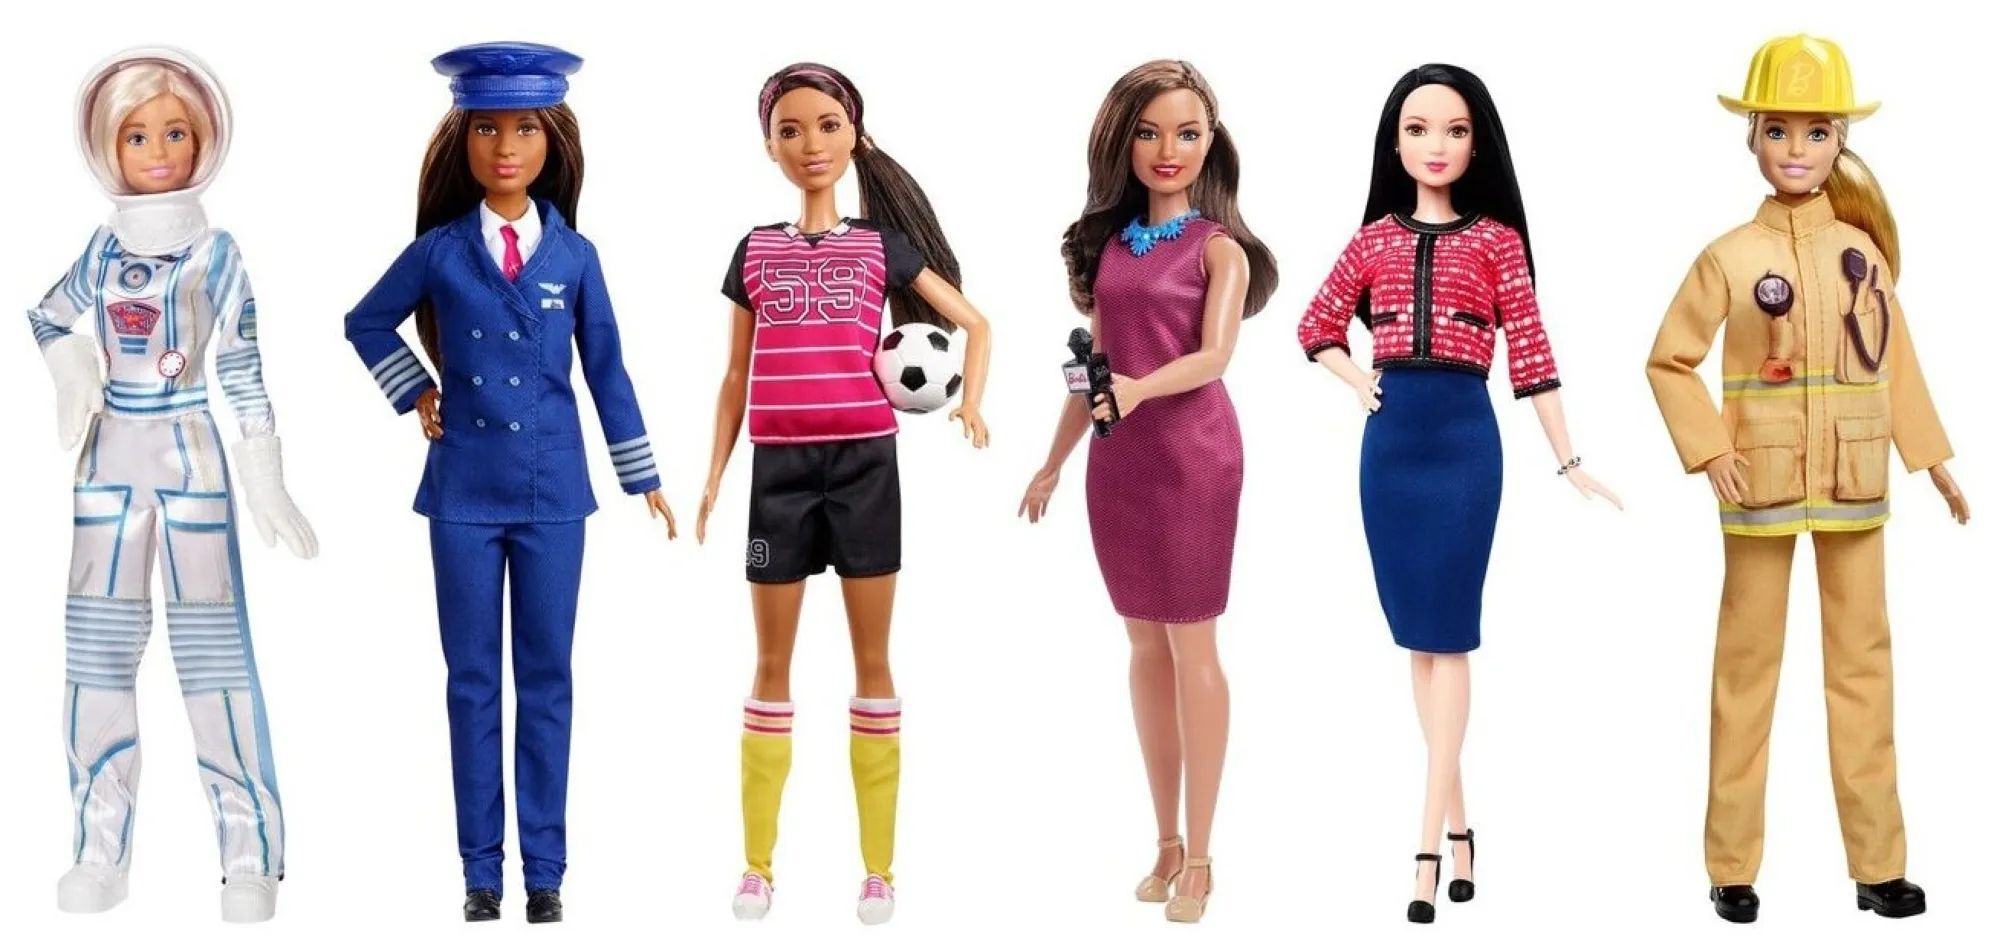 Современная Барби: отражение различных стандартов красоты и фигуры